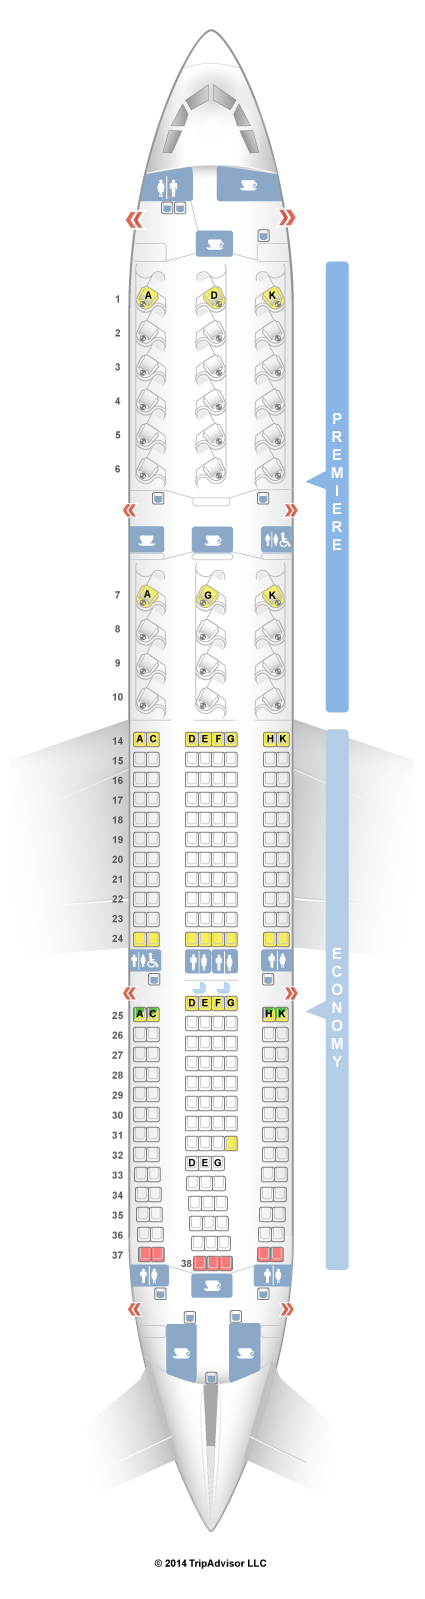 Seatguru Seat Map Jet Airways